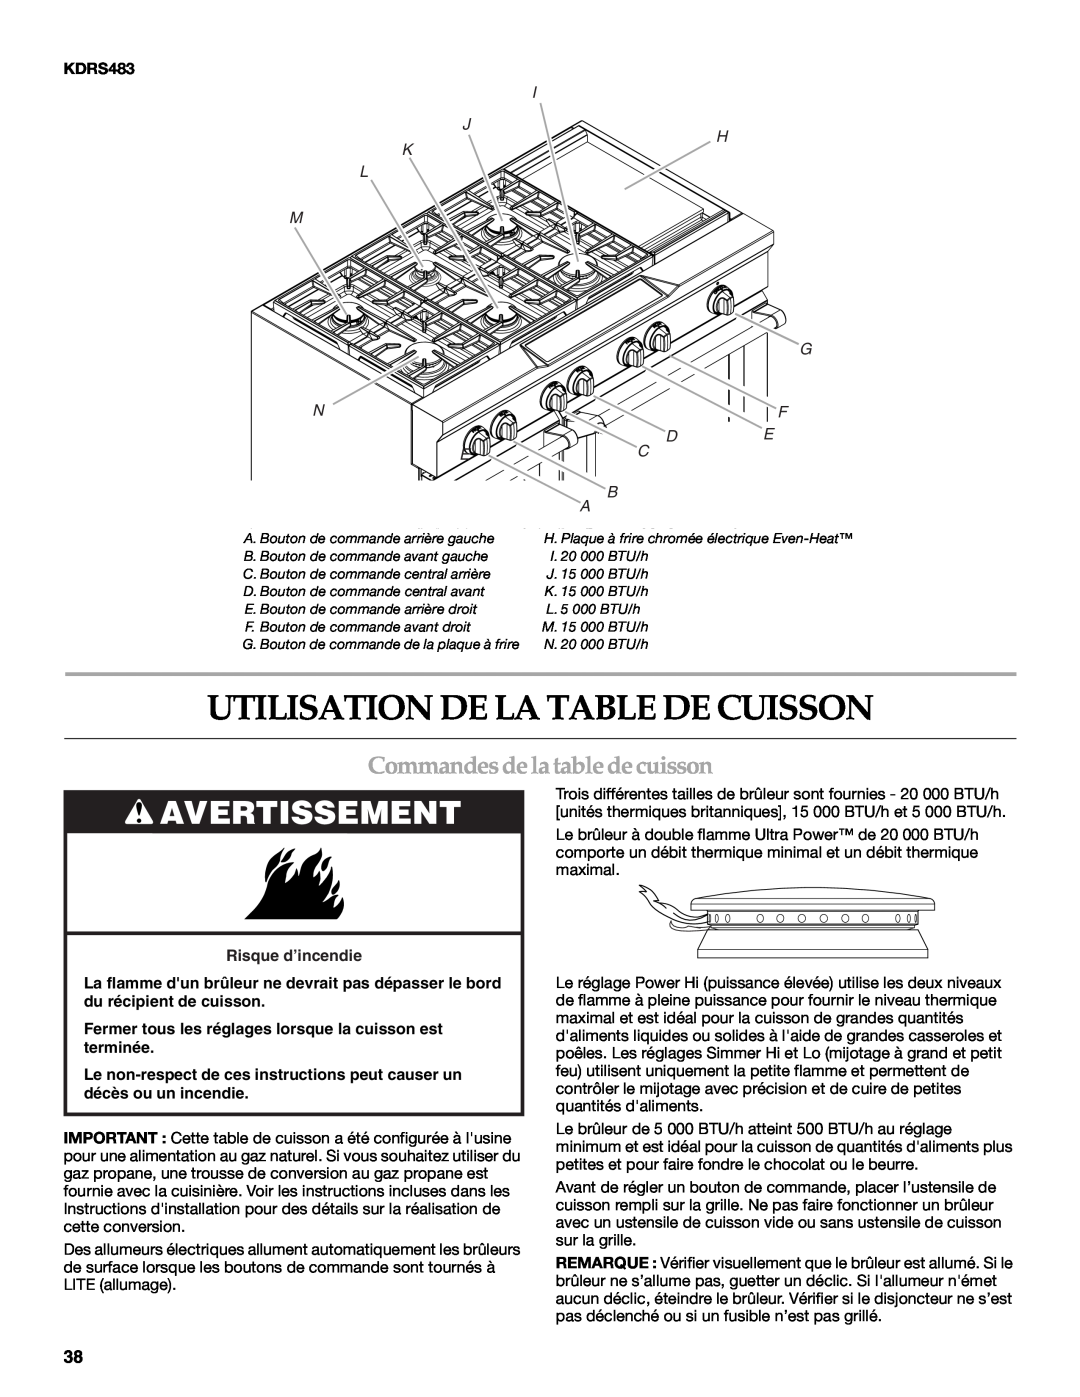 KitchenAid KDRS407 Utilisation De La Table De Cuisson, Commandes de la table de cuisson, Avertissement, I J H K L M G 